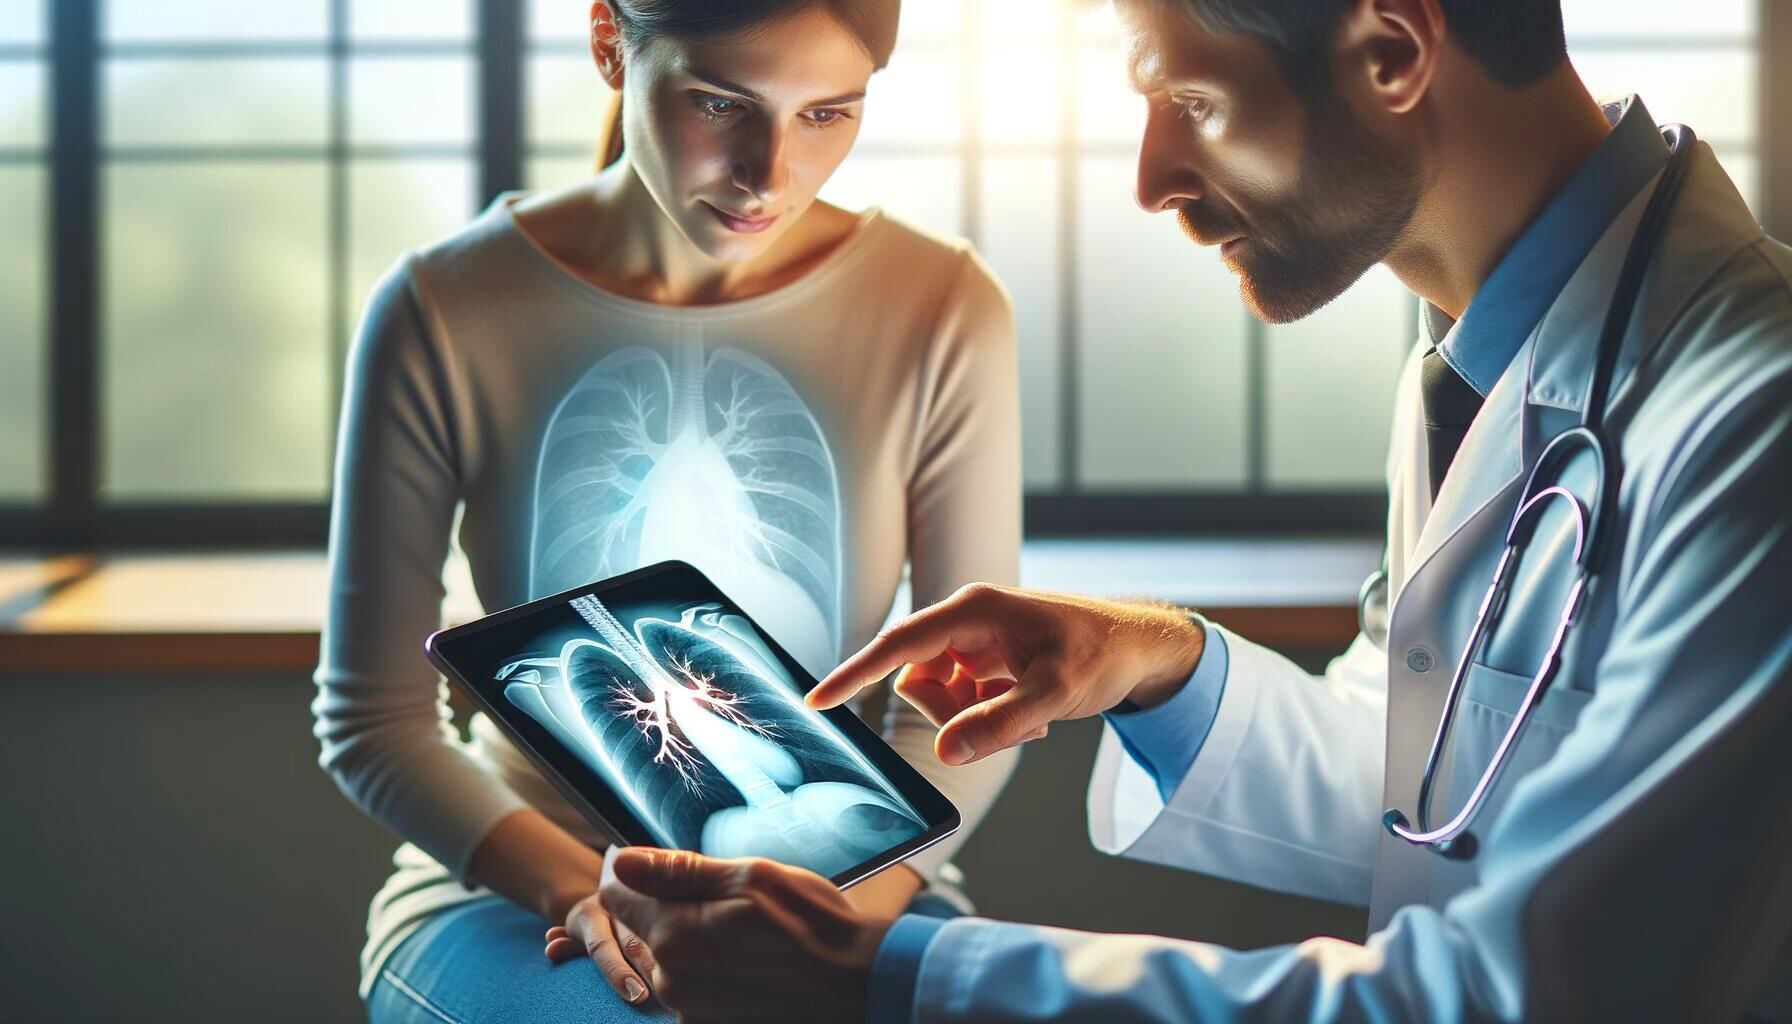 Médico joven enseñando a un paciente la radiografía de pulmones en una tablet, proporcionando una visión detallada de la condición respiratoria. La imagen destaca la importancia de la tecnología en el diagnóstico y tratamiento médico, y la comunicación efectiva entre doctor y paciente en un hospital. (Imagen ilustrativa Infobae)